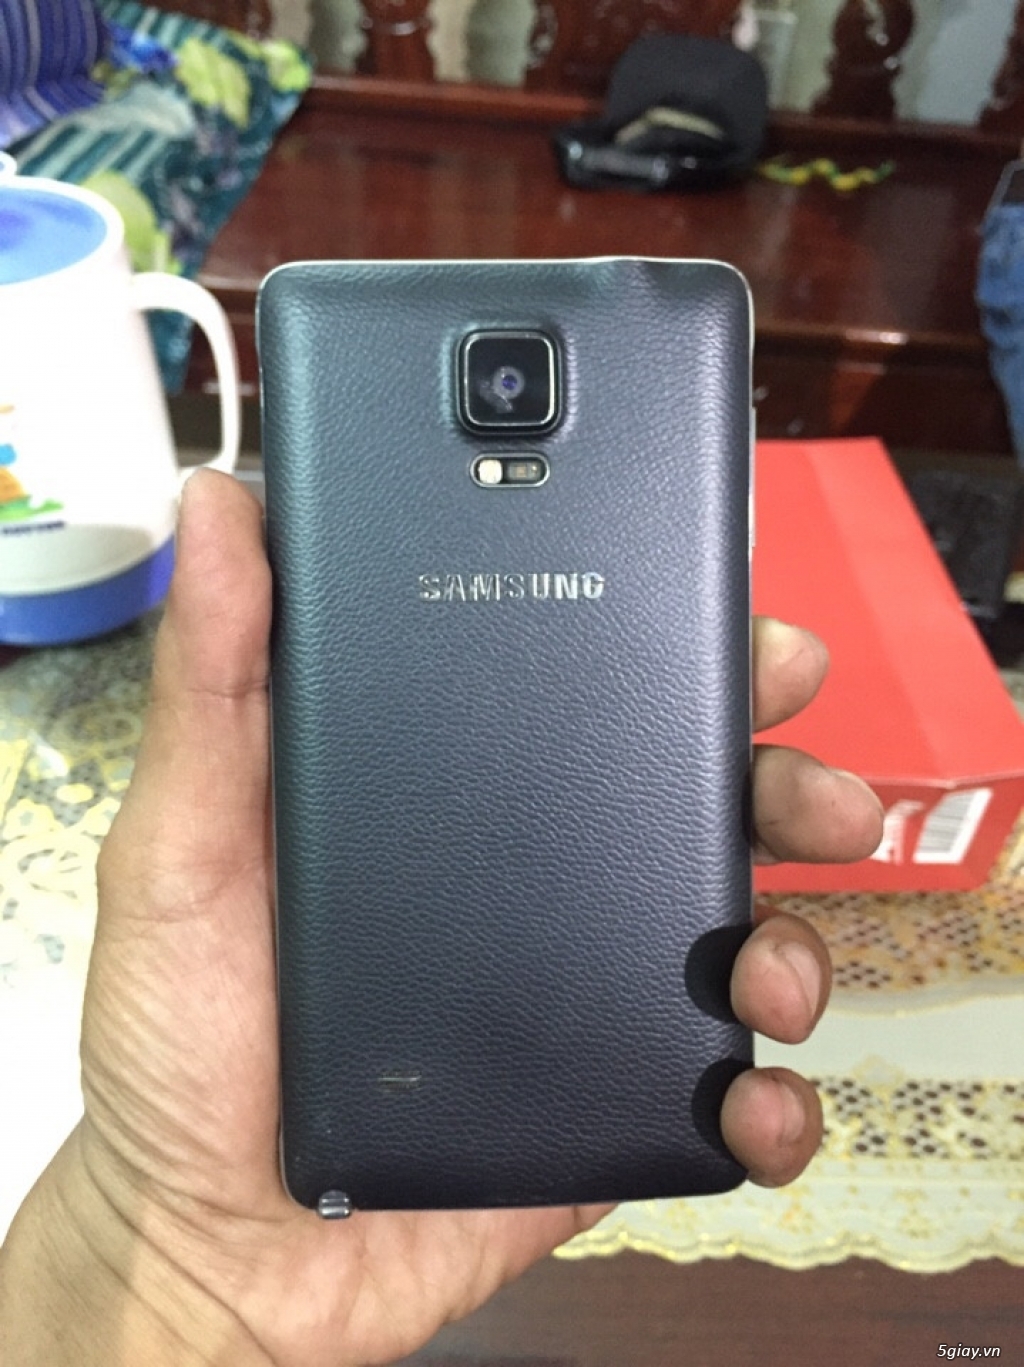 Samsung note 4 n910c đen 32gb - 5